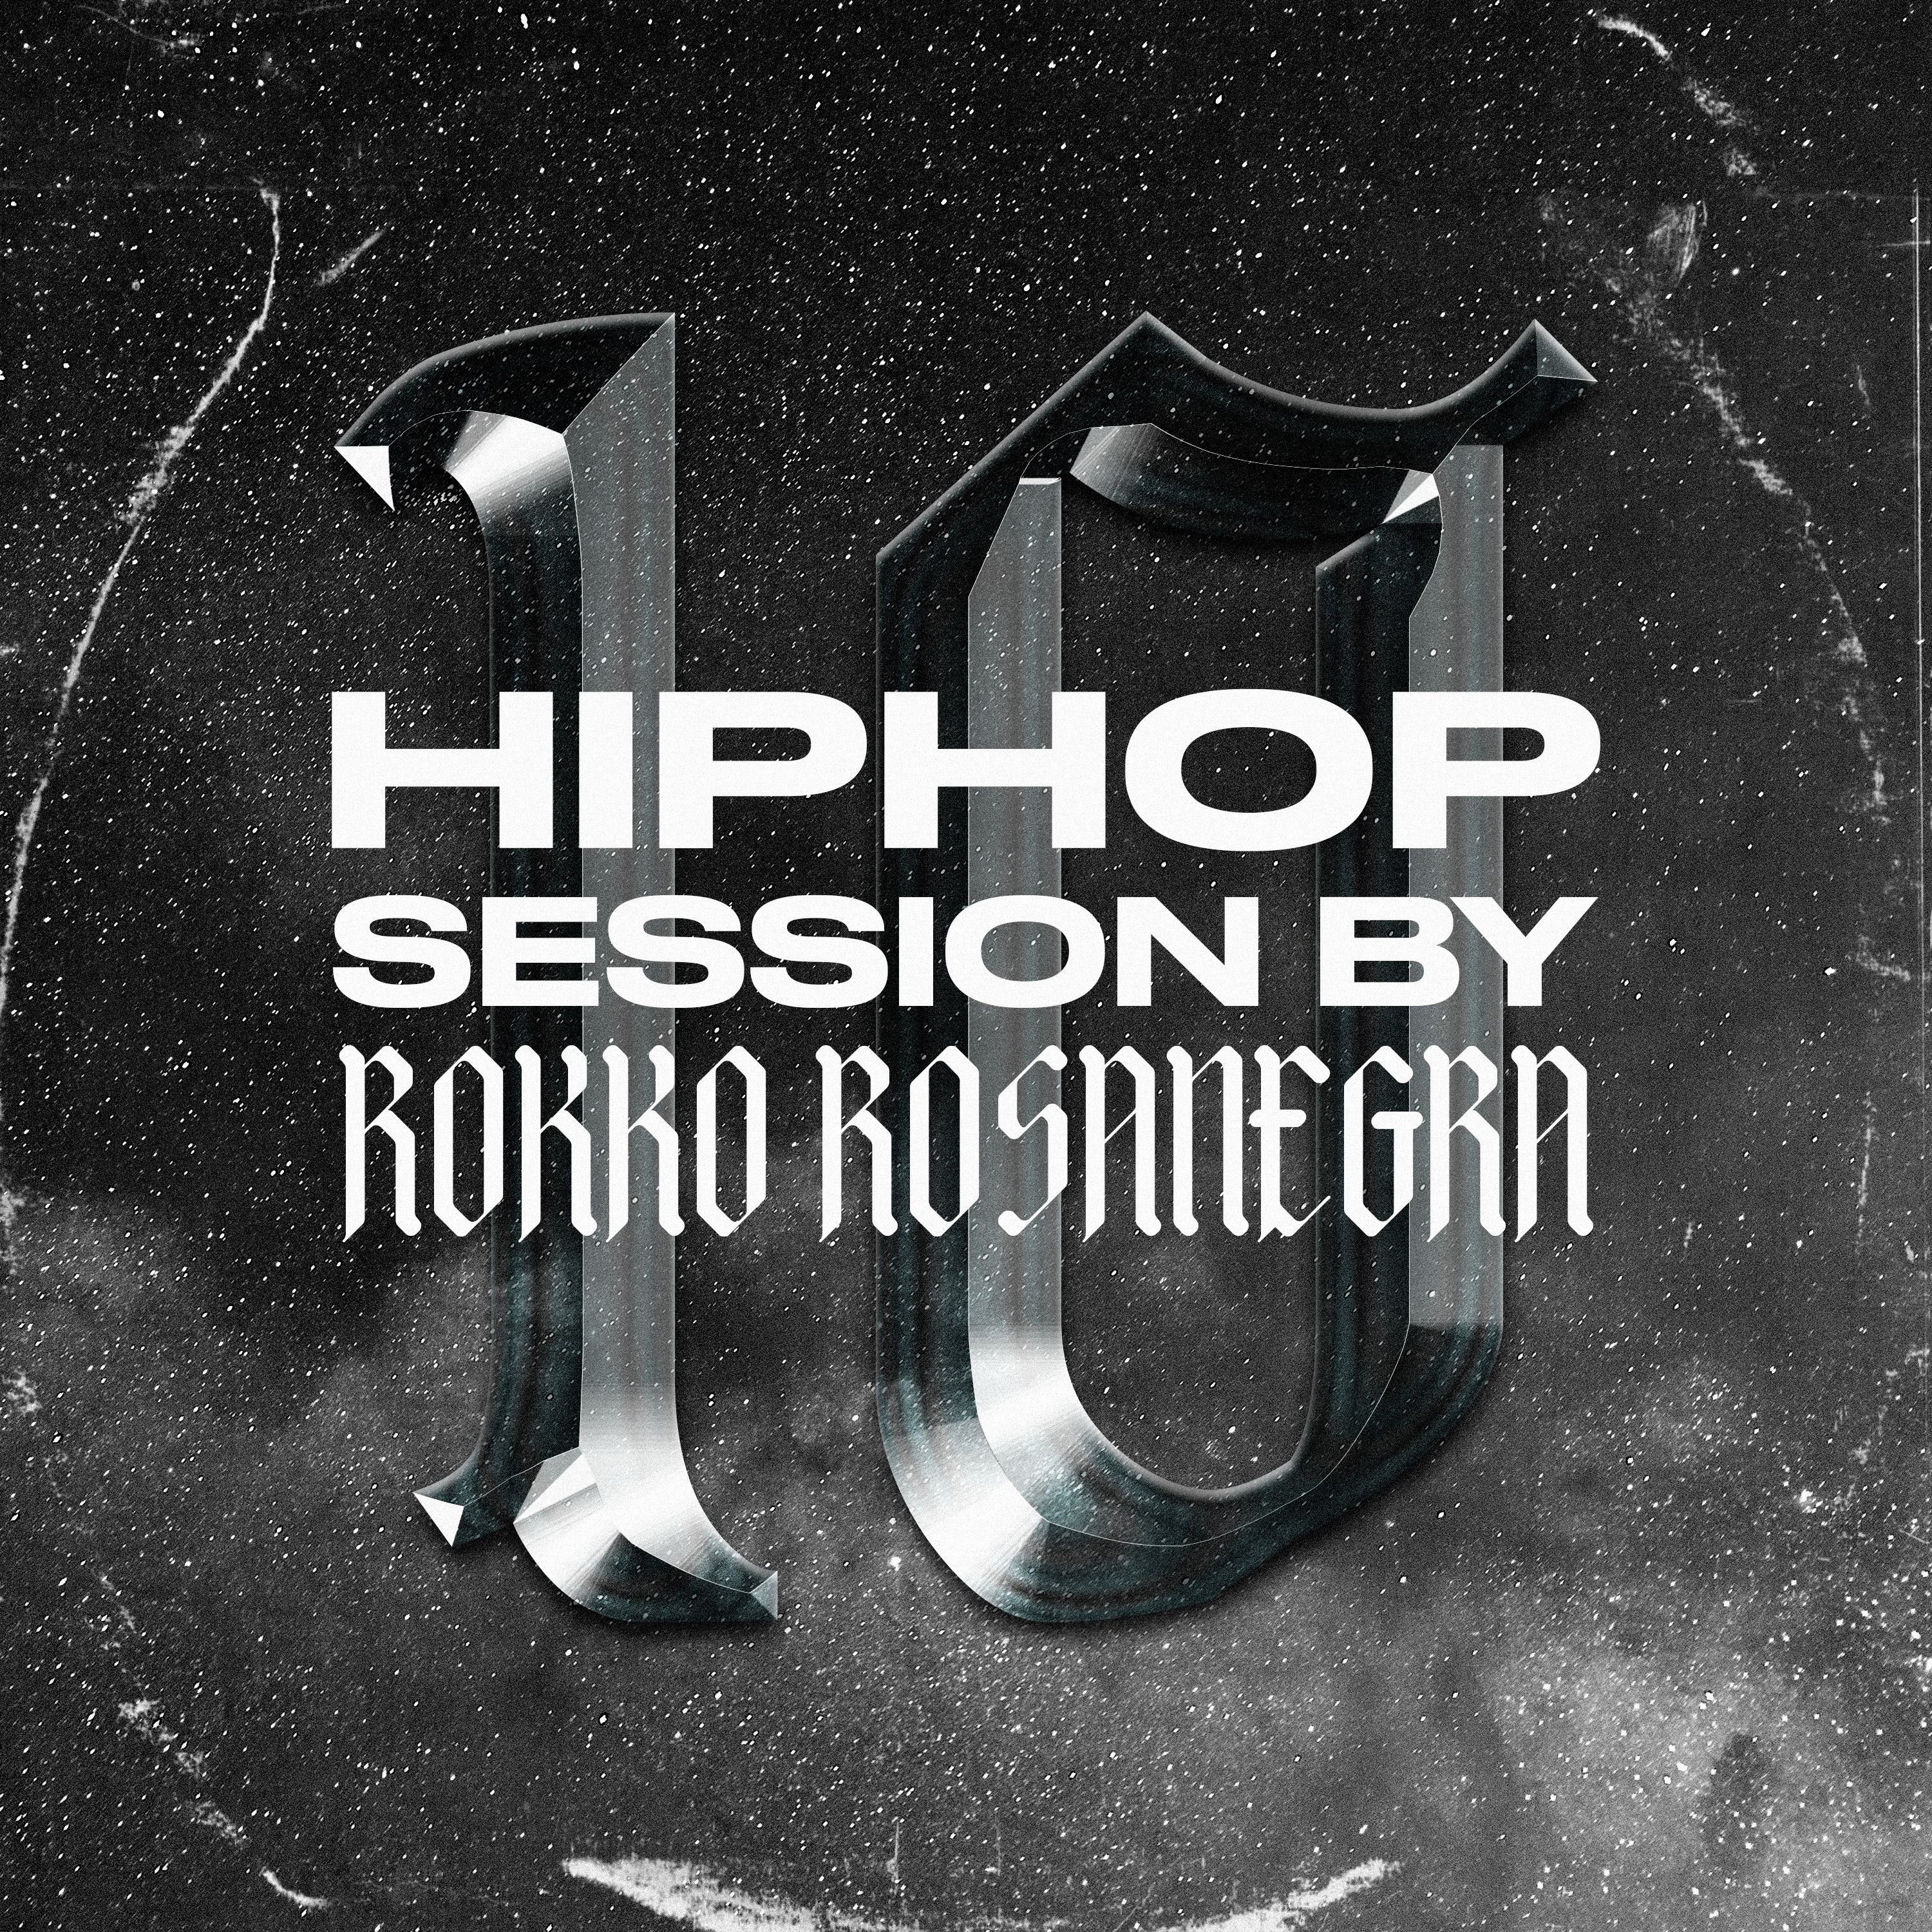 Изтегли HIP HOP SESSION 10 (DJ ROKKO ROSANEGRA)